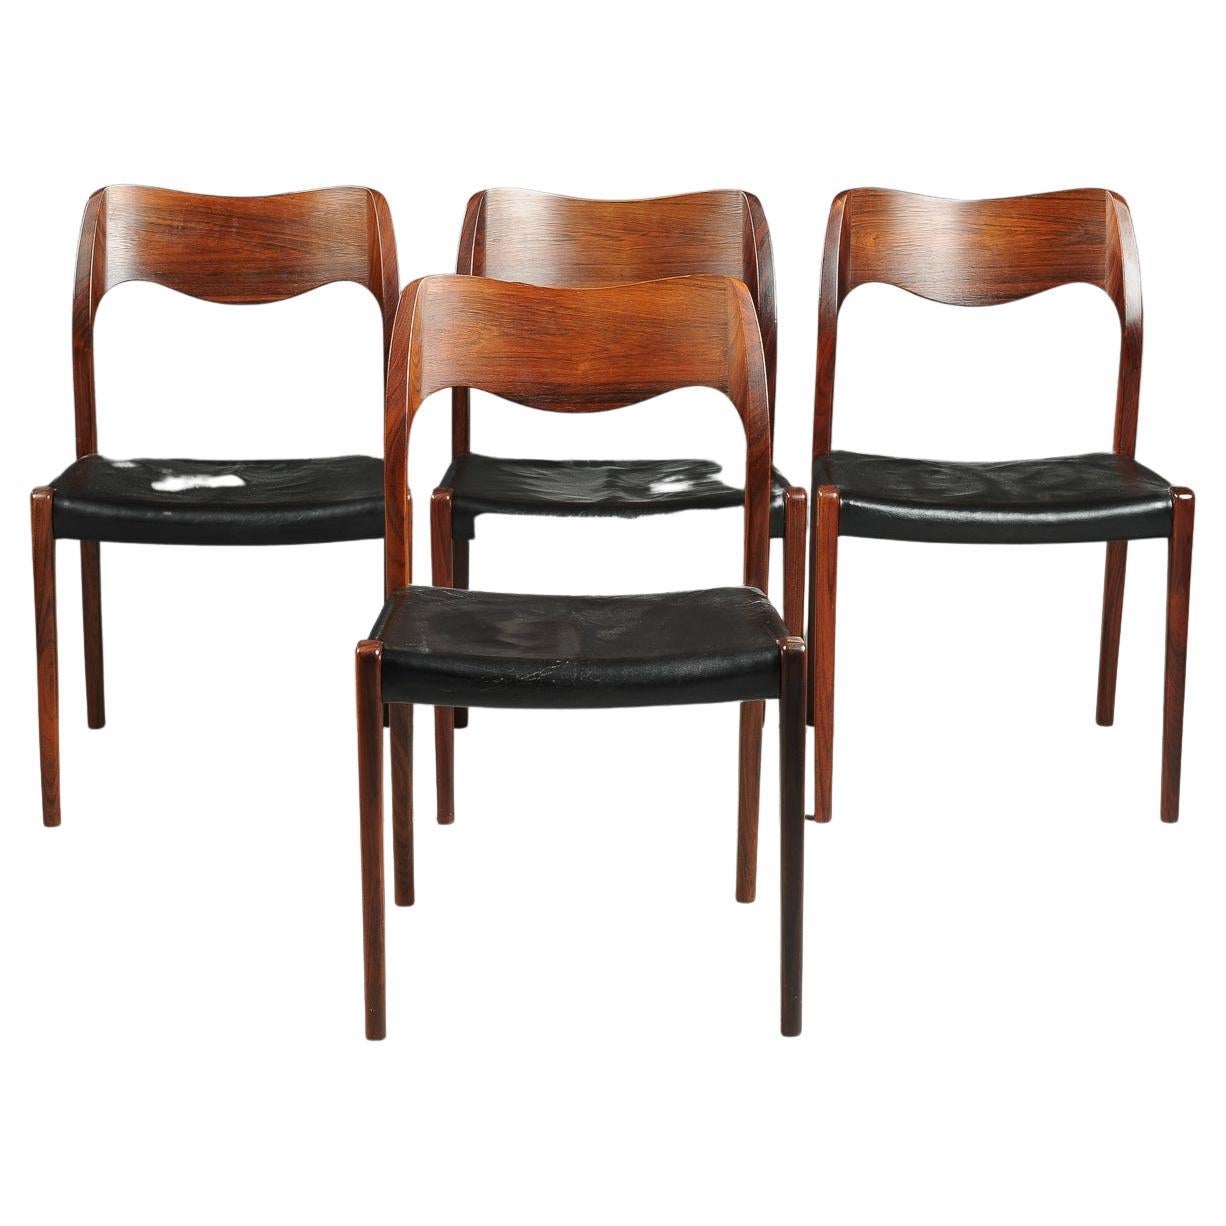 La photo représente un ensemble de quatre chaises de salle à manger conçues par Niels Otto Moller en 1951 et fabriquées par JL Moller avant 1969, comme l'indique le disque rond de l'étiquette. Cette liste comprend la table illustrée mais les chaises